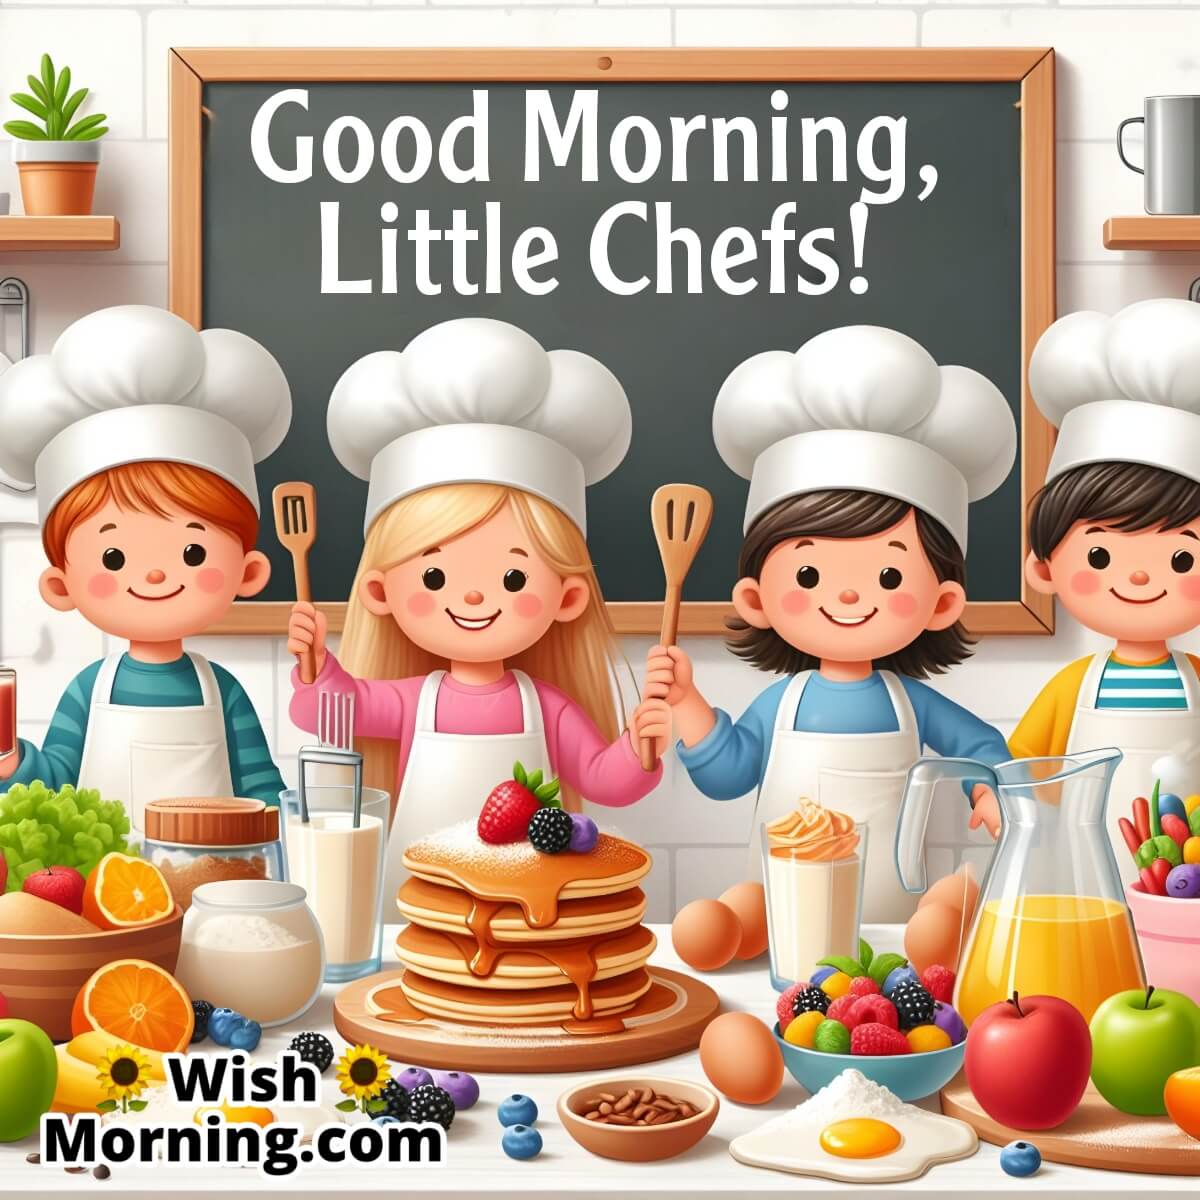 Good Morning, Little Chefs!